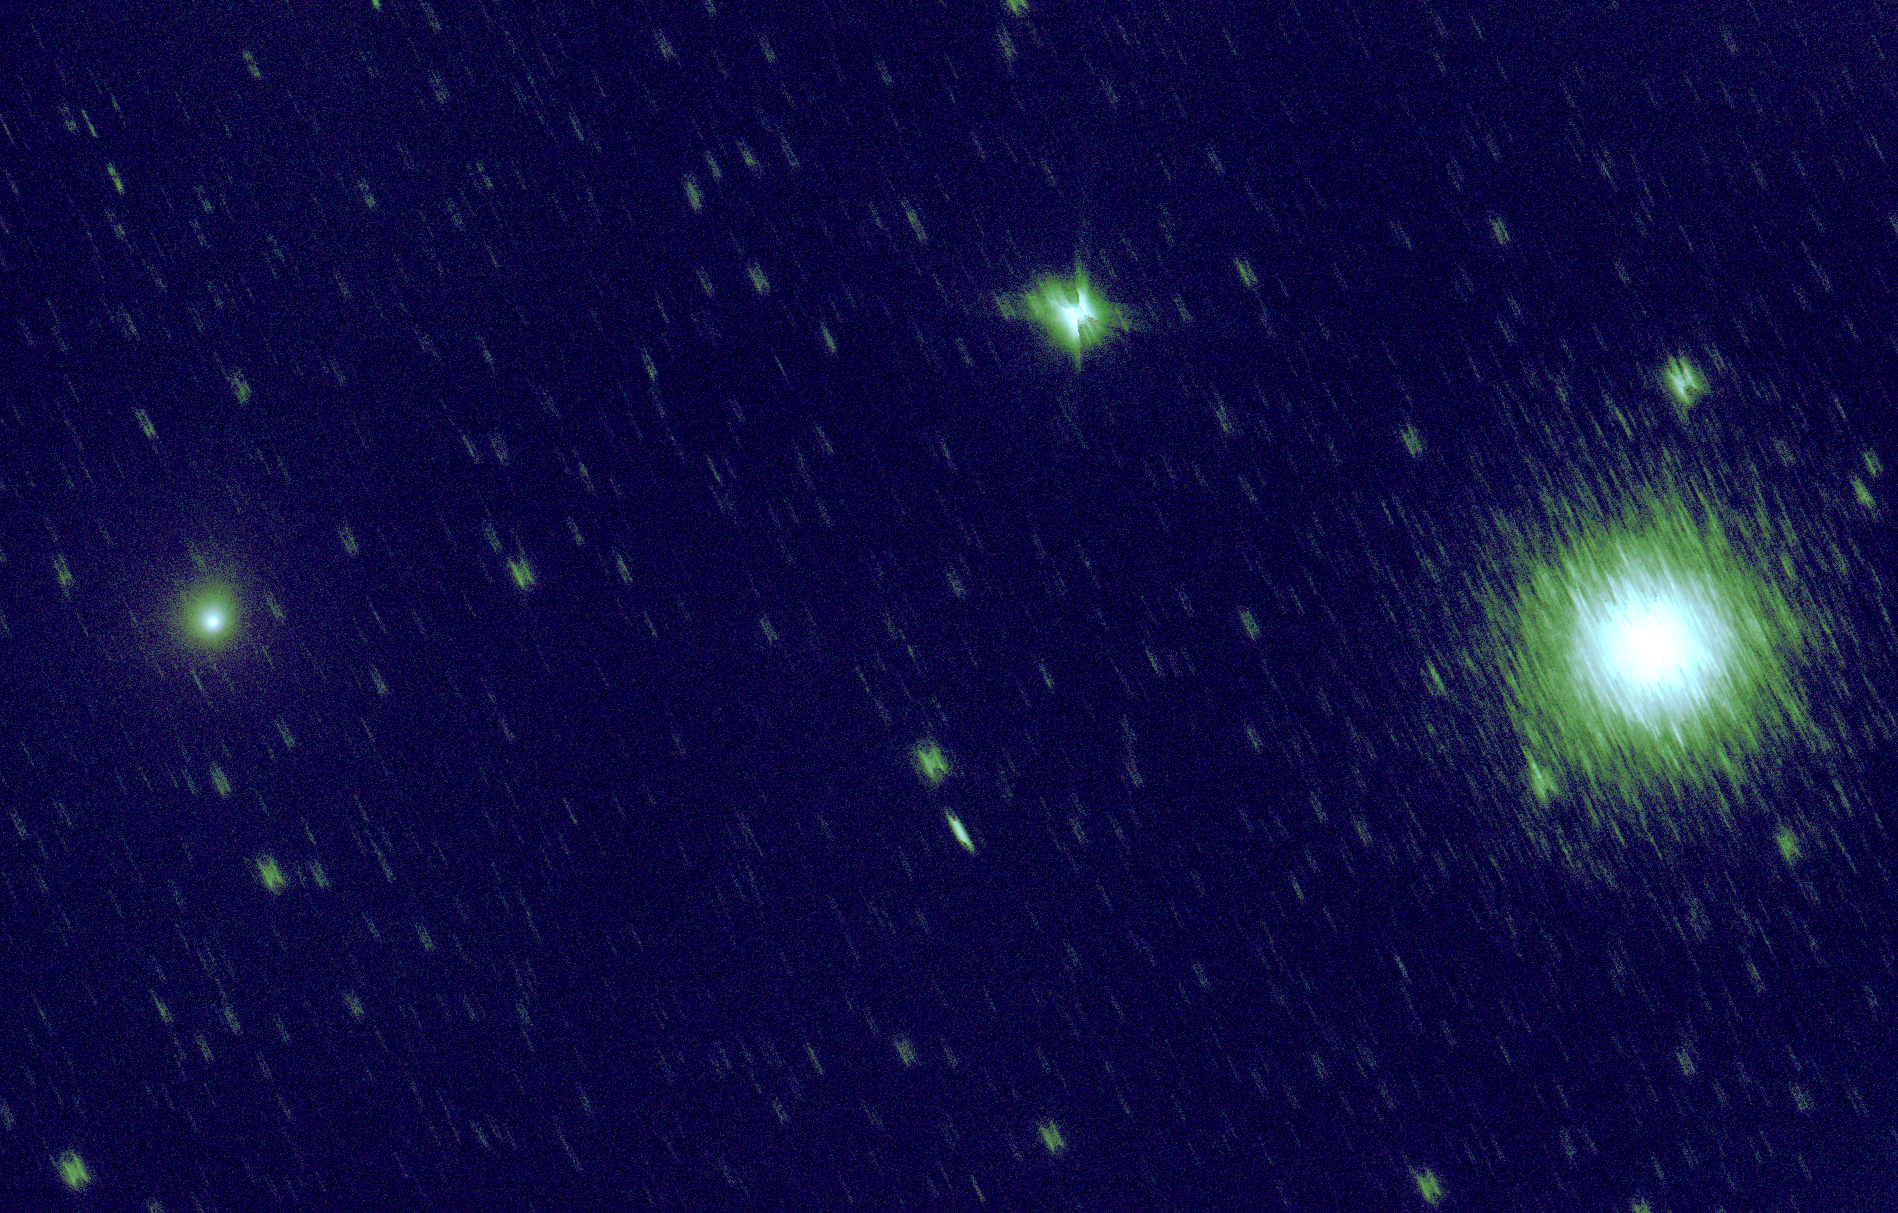 r_pp_Palomar_M3_30s_stacked_comete_recadree_miroir_gradient_gimp.png.185c98eac0799657fcd0b513ff3d243e.png